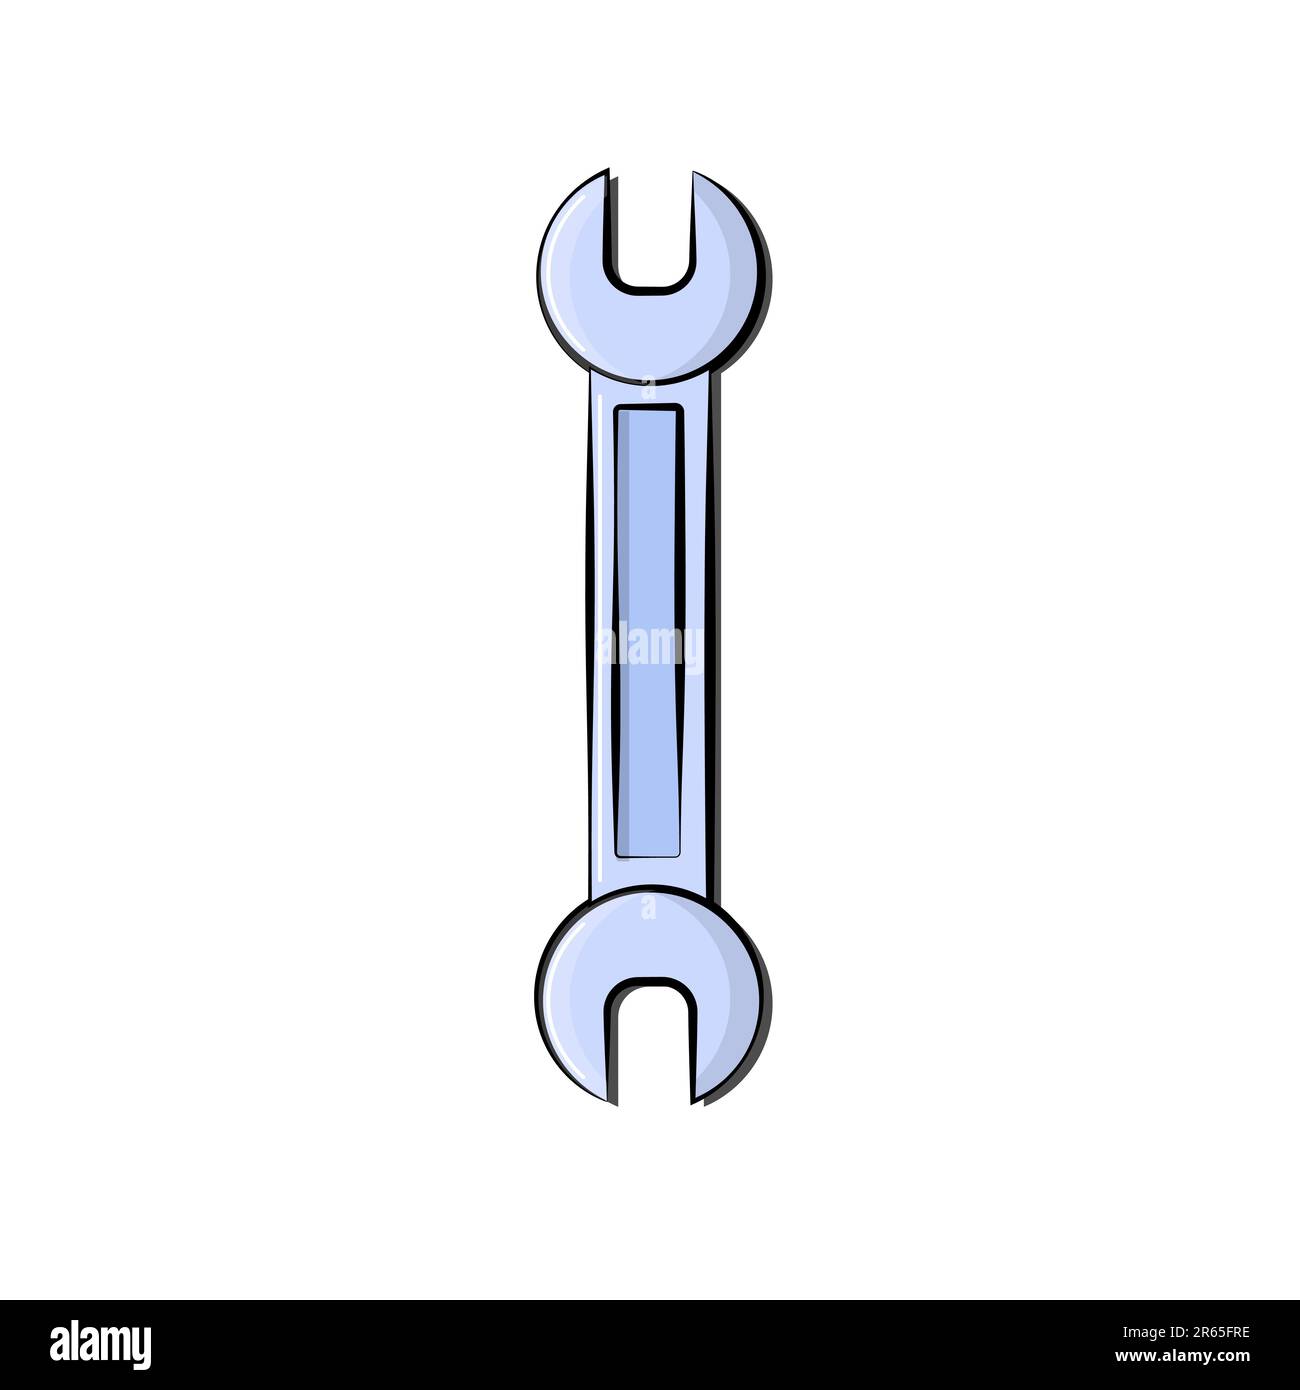 Aufbau blaues Symbol eines Zapfhahnschlüssels zum Festziehen und Lösen von Muttern und Schrauben für Reparaturen. Metallbauwerkzeug. Vektor-Illustration Stock Vektor